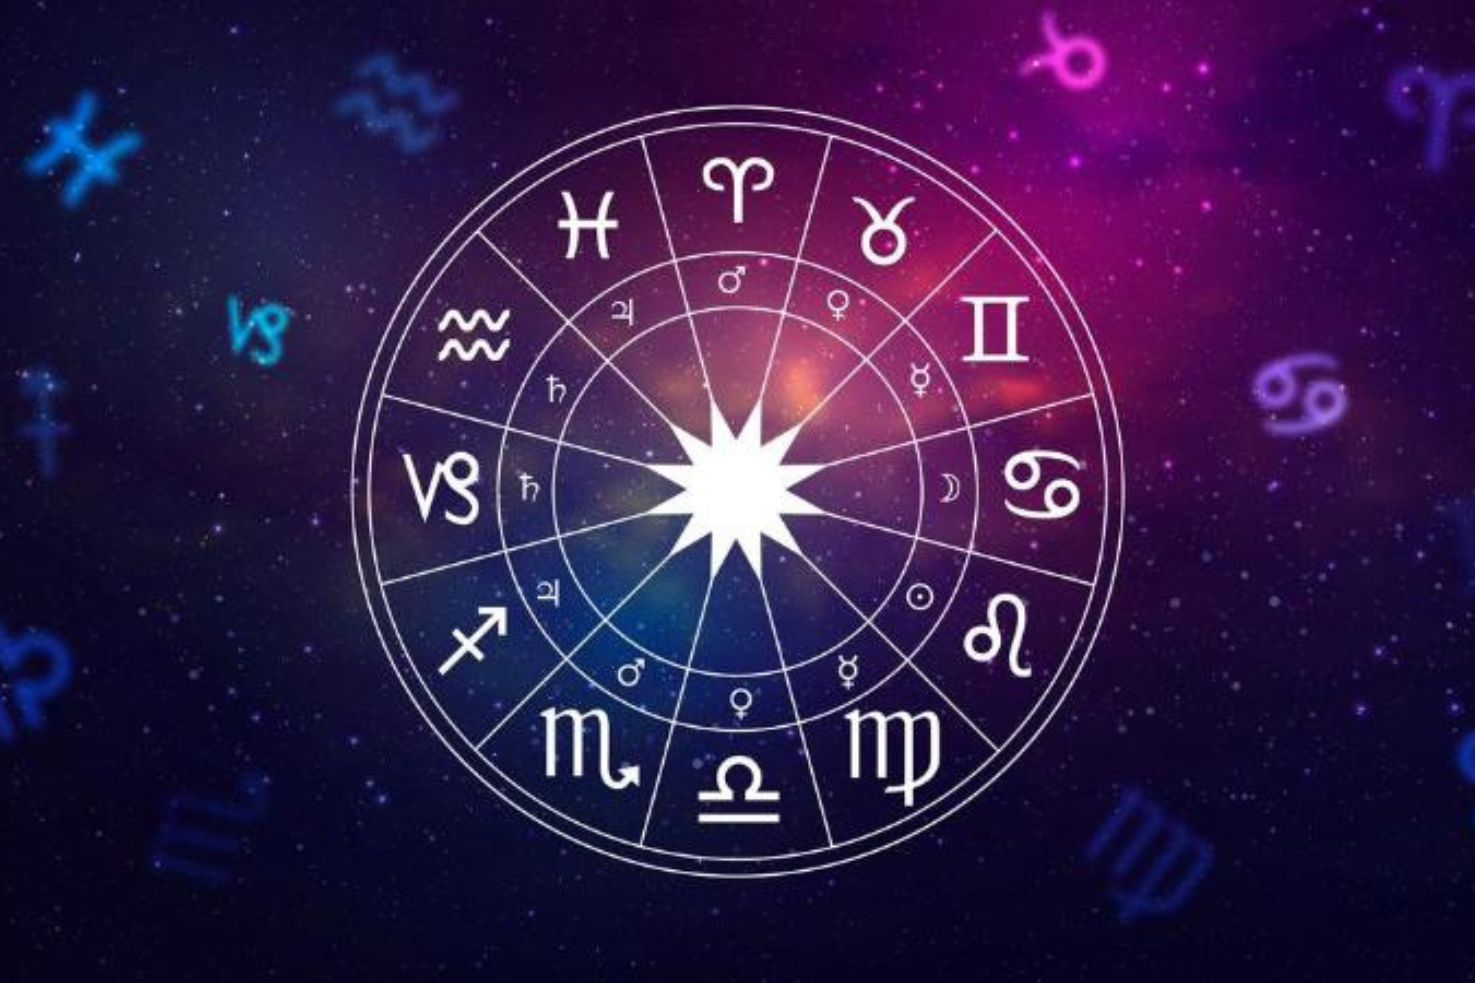 A csillagok üzenete: A horoszkóp varázslatos világa régen és napjainkban